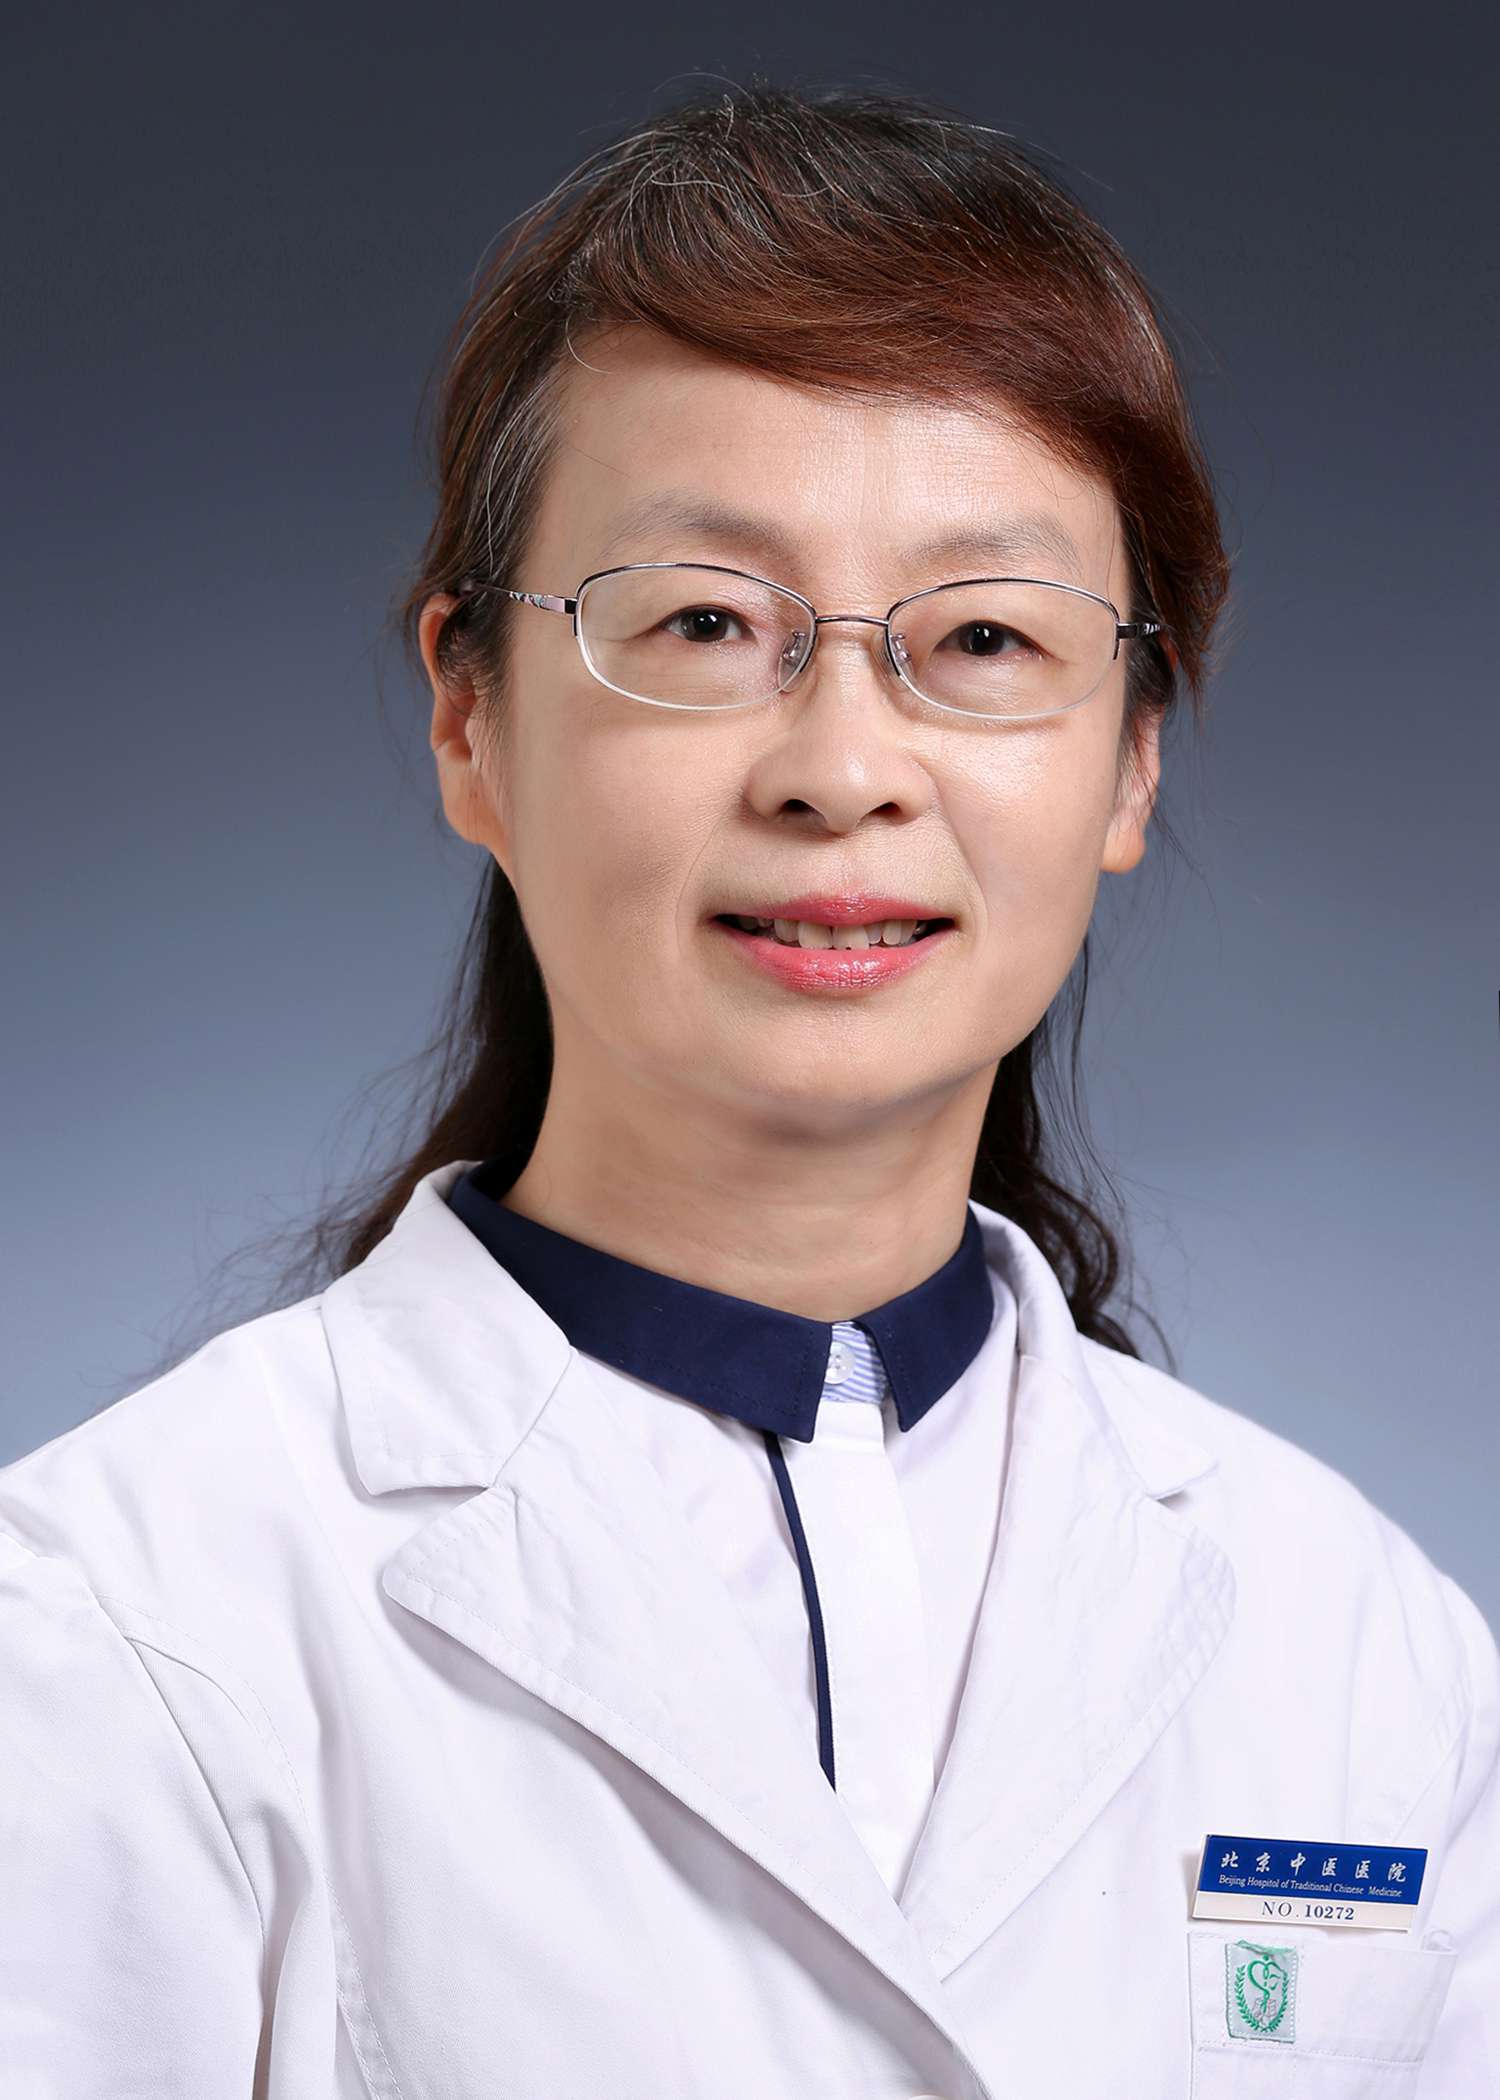 Dr. Yi Jinghong